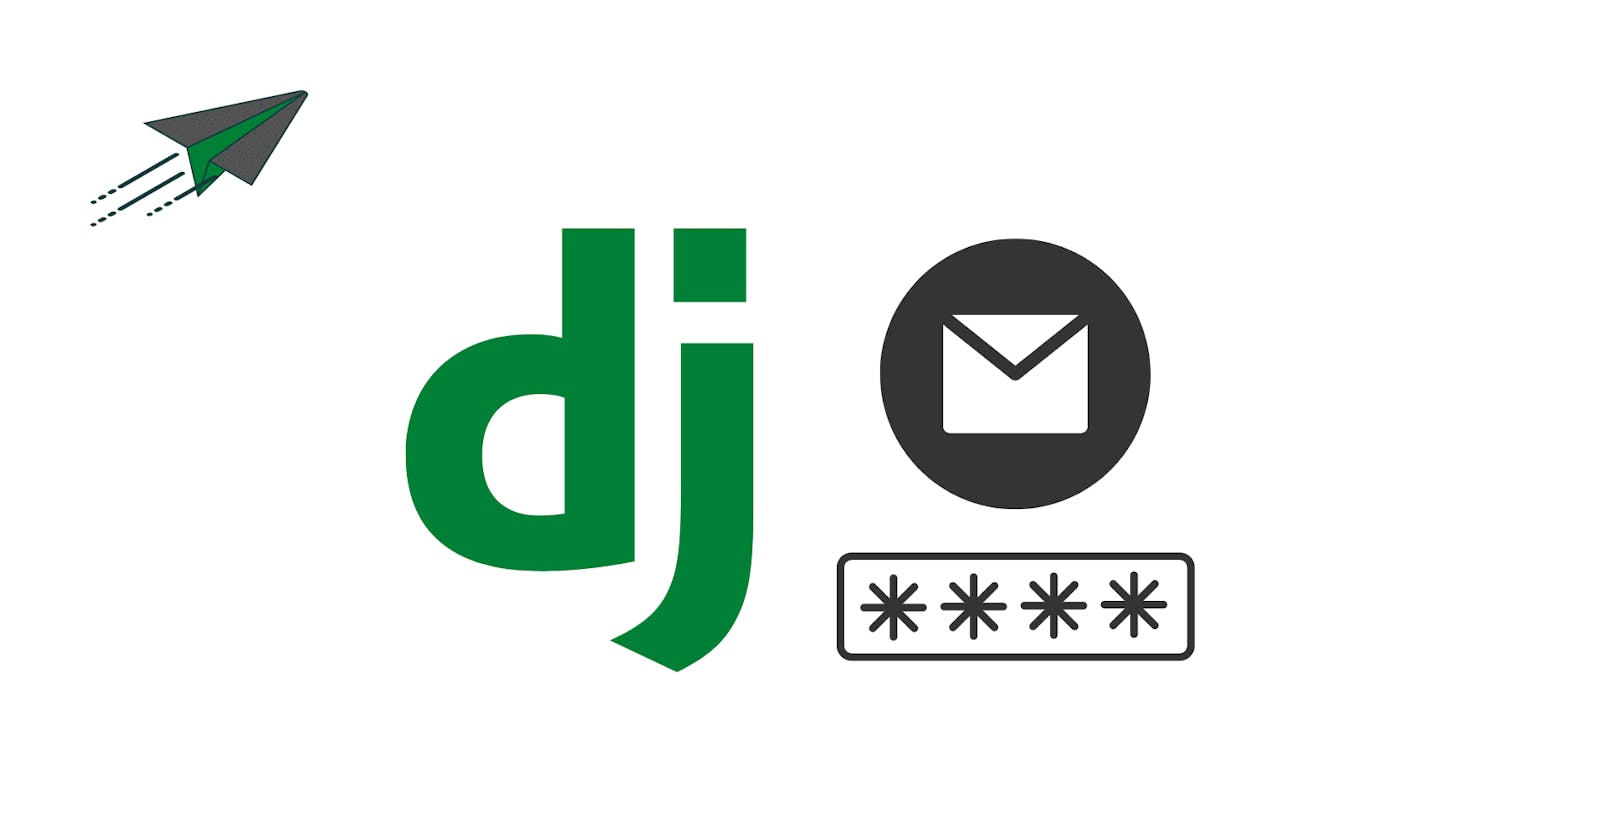 Django authentication using Email address